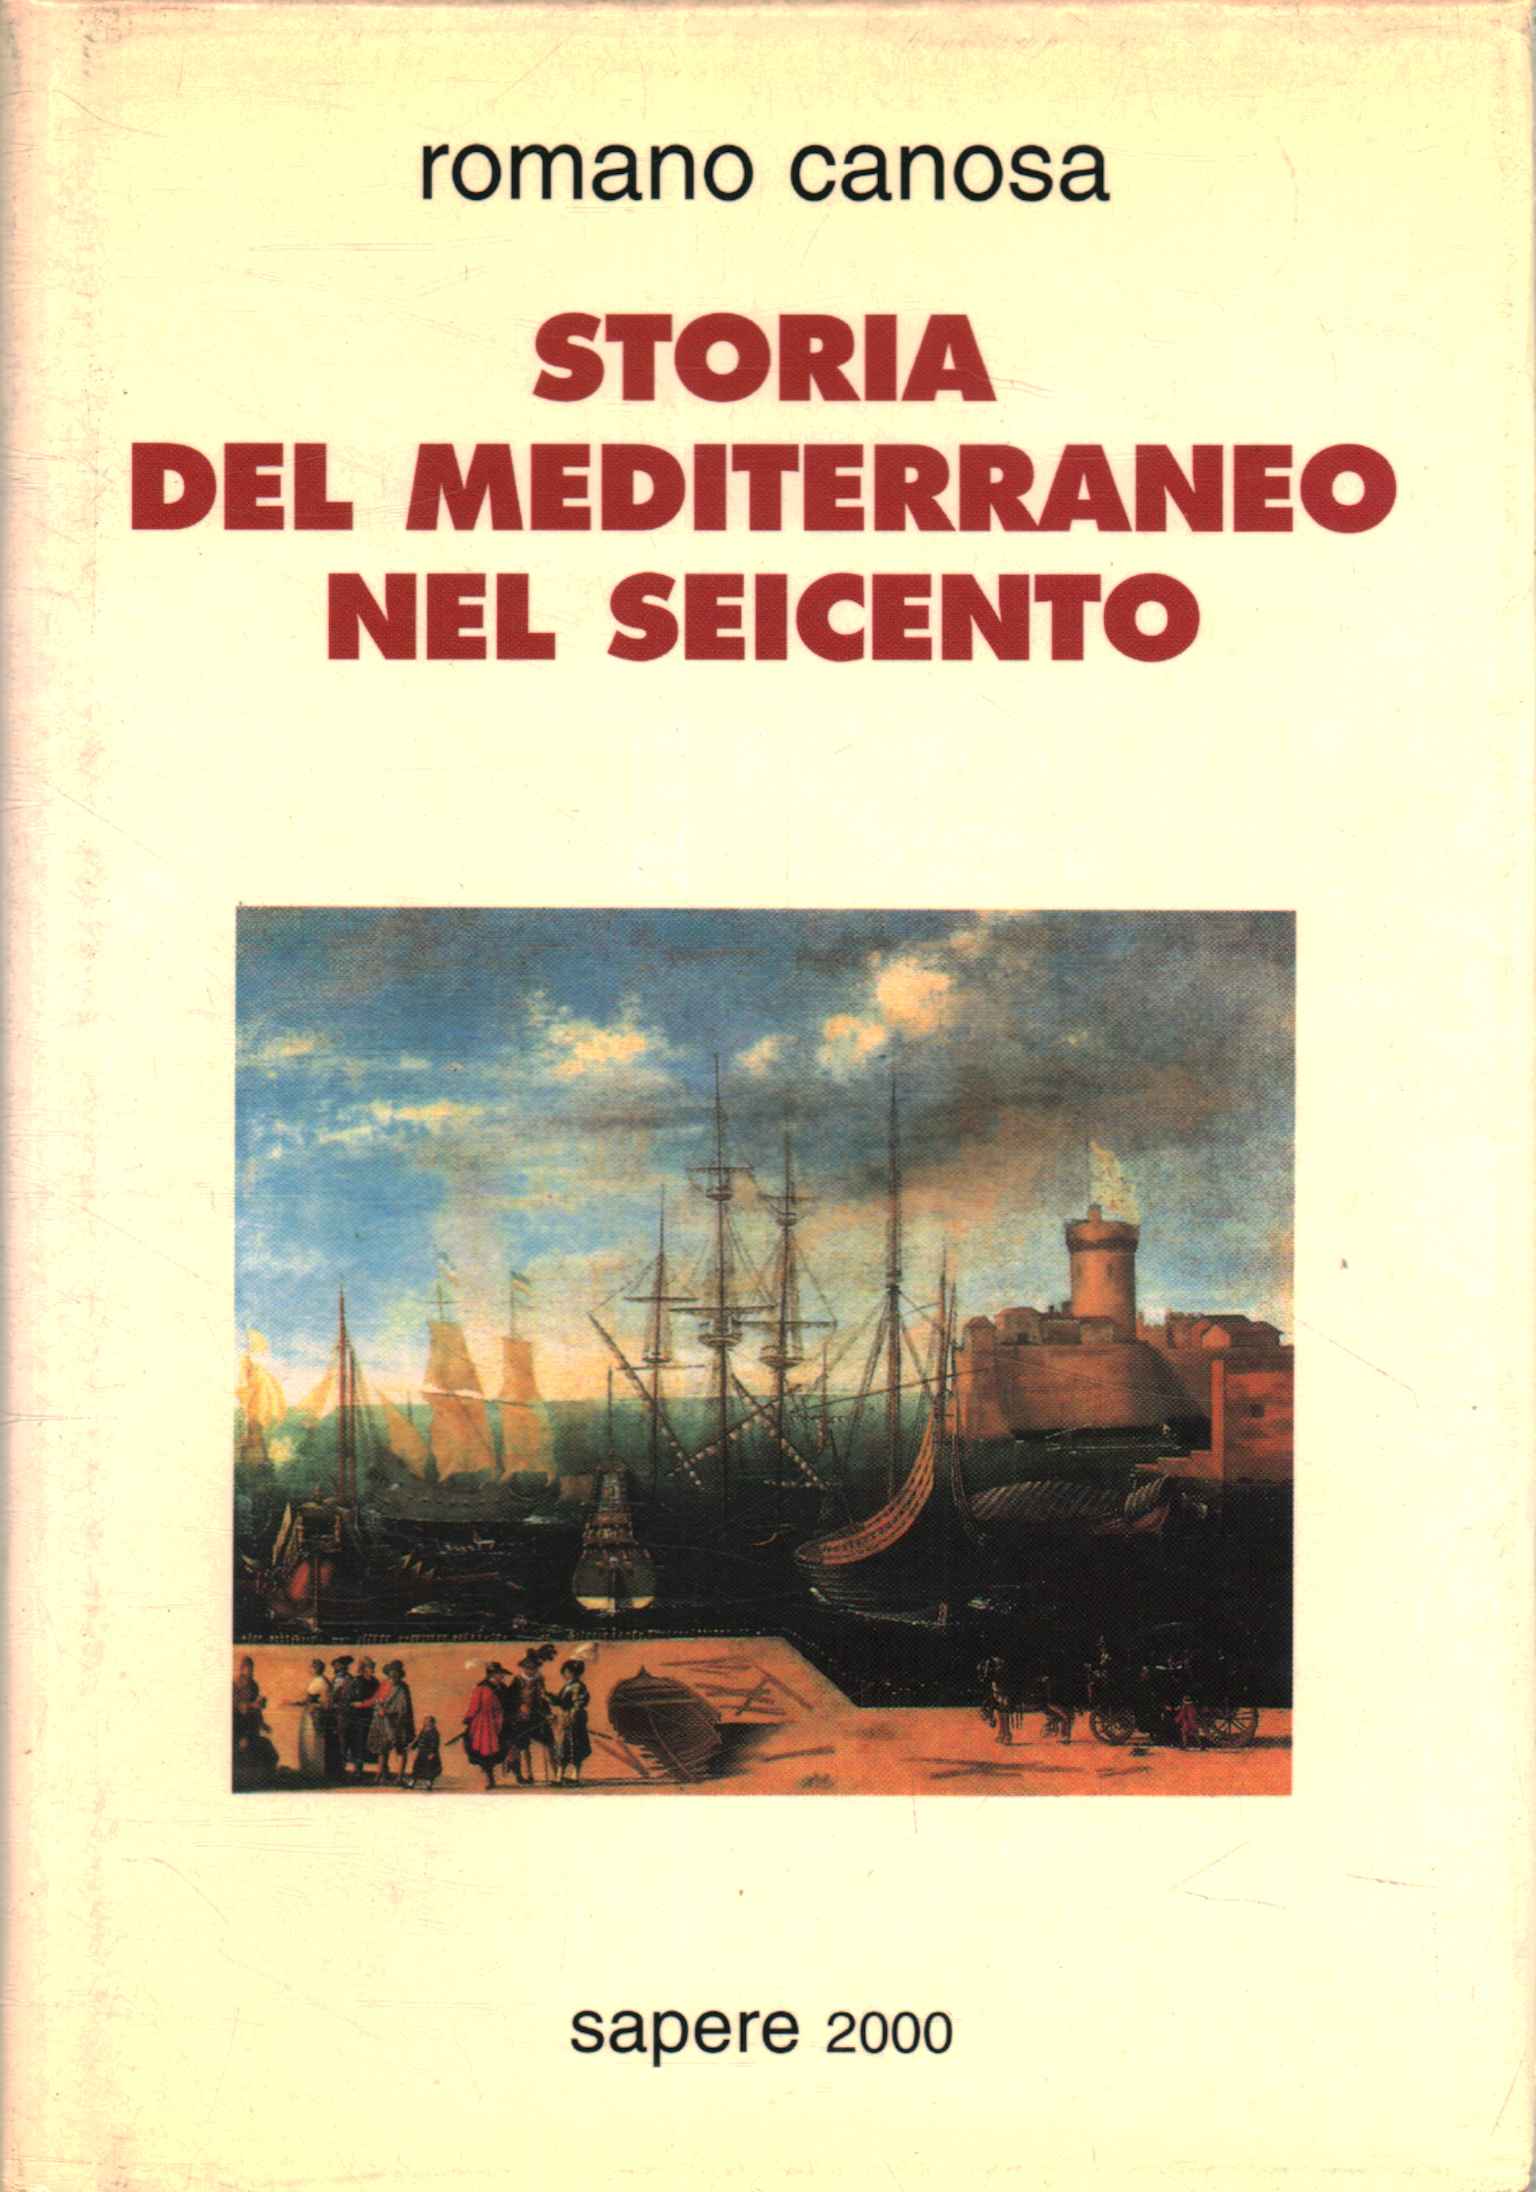 Geschichte des Mittelmeerraums im 17. Jahrhundert